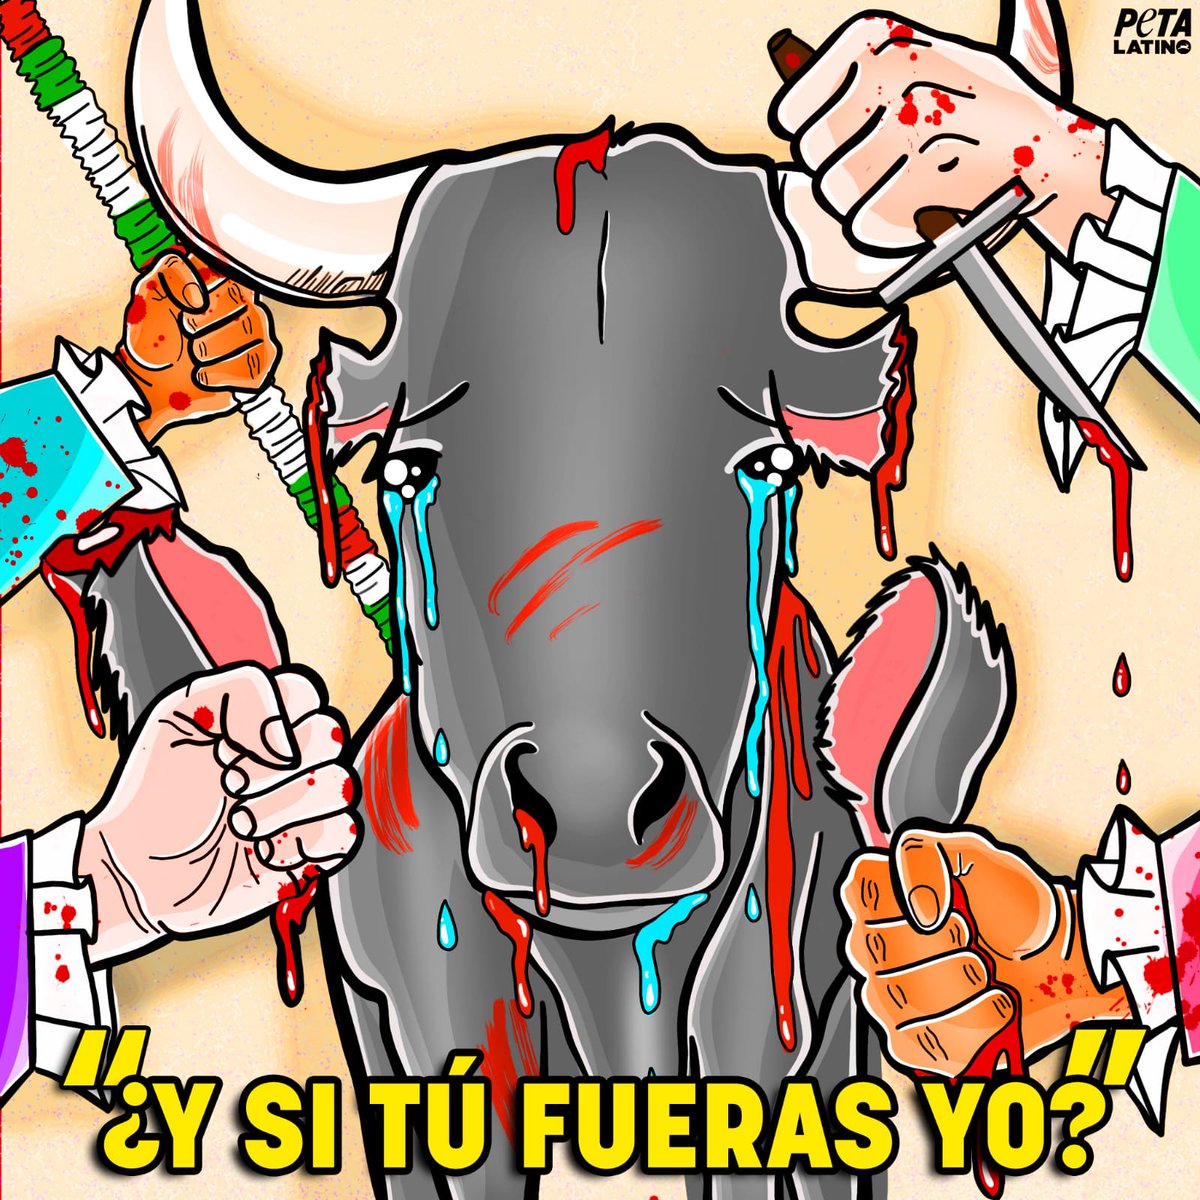 'Si había ido a los toros y si había estado a gusto ' dice Tamayo #L6CTamayazo . Impresentable en todos los sentidos. #TauromaquiaEsViolencia